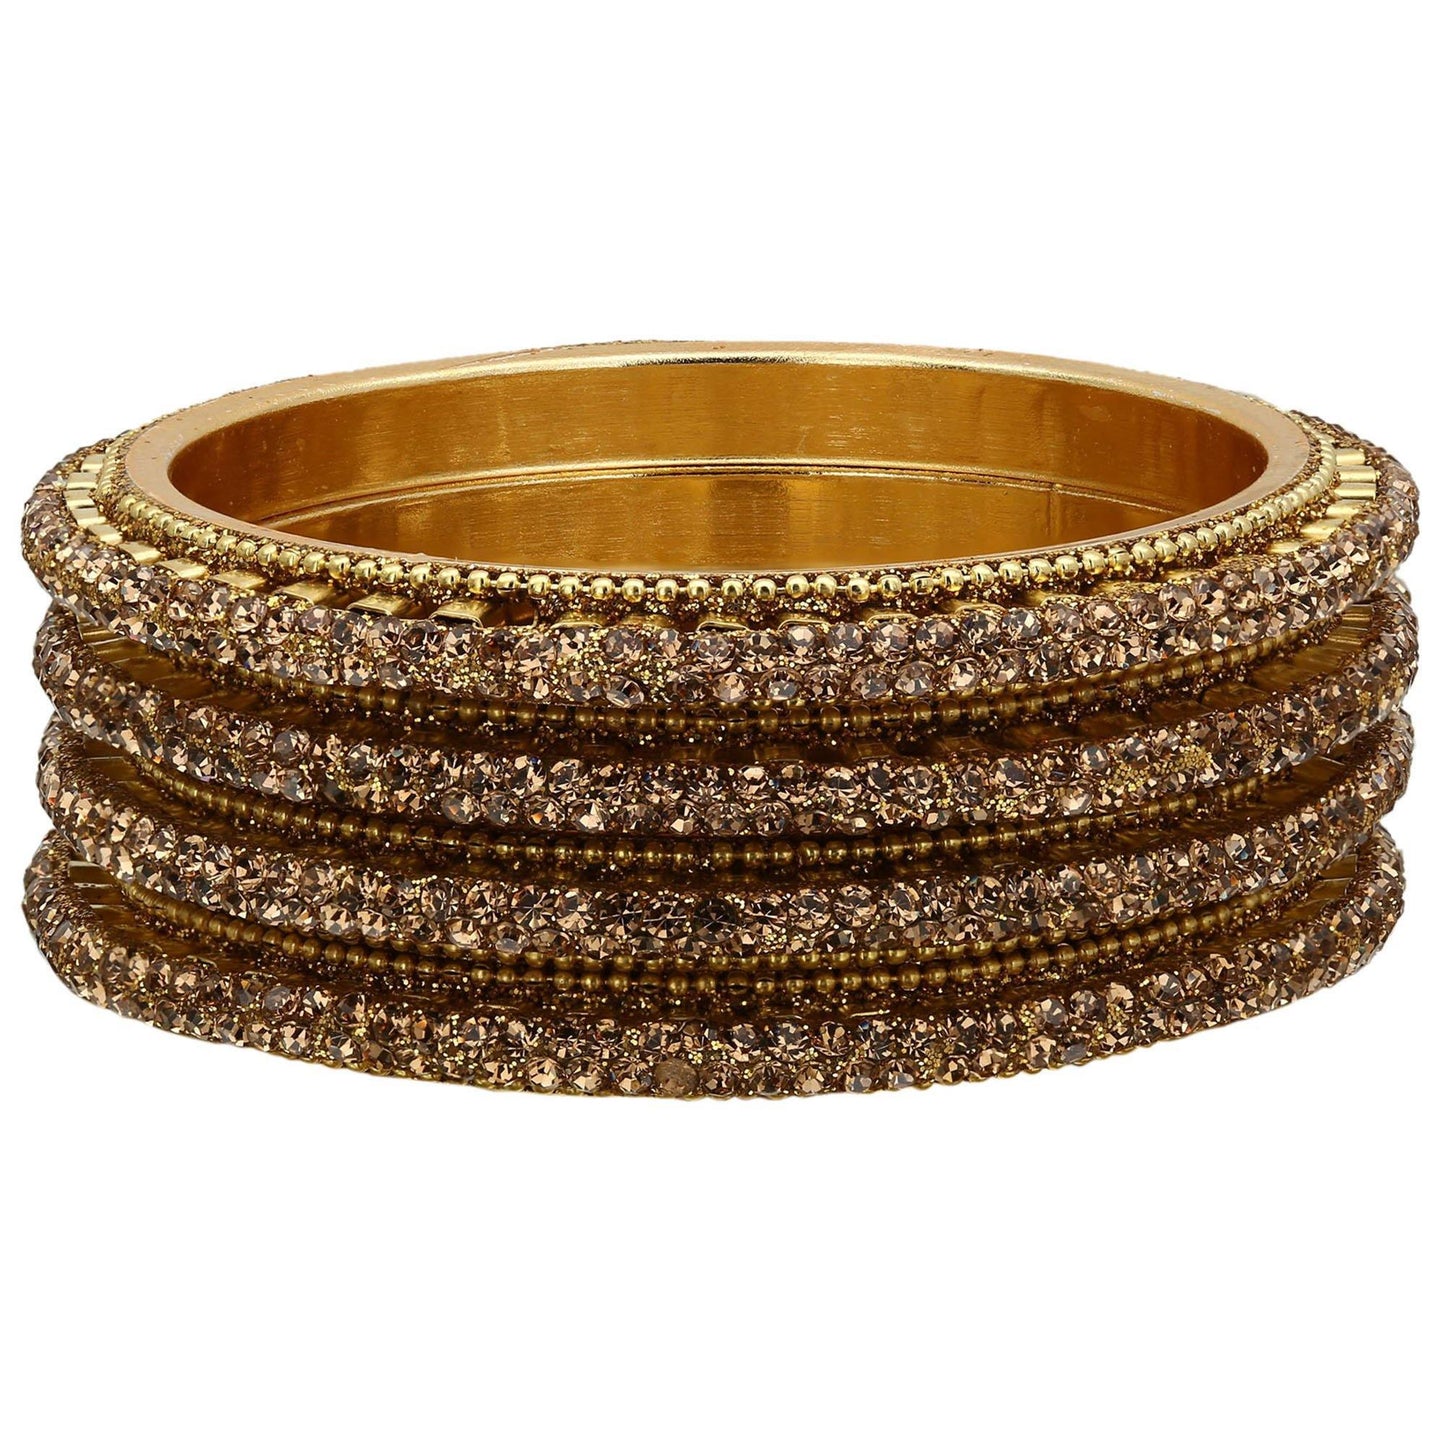 sukriti traditional gold plated bangadi style brass bangles for girls & women – set of 4